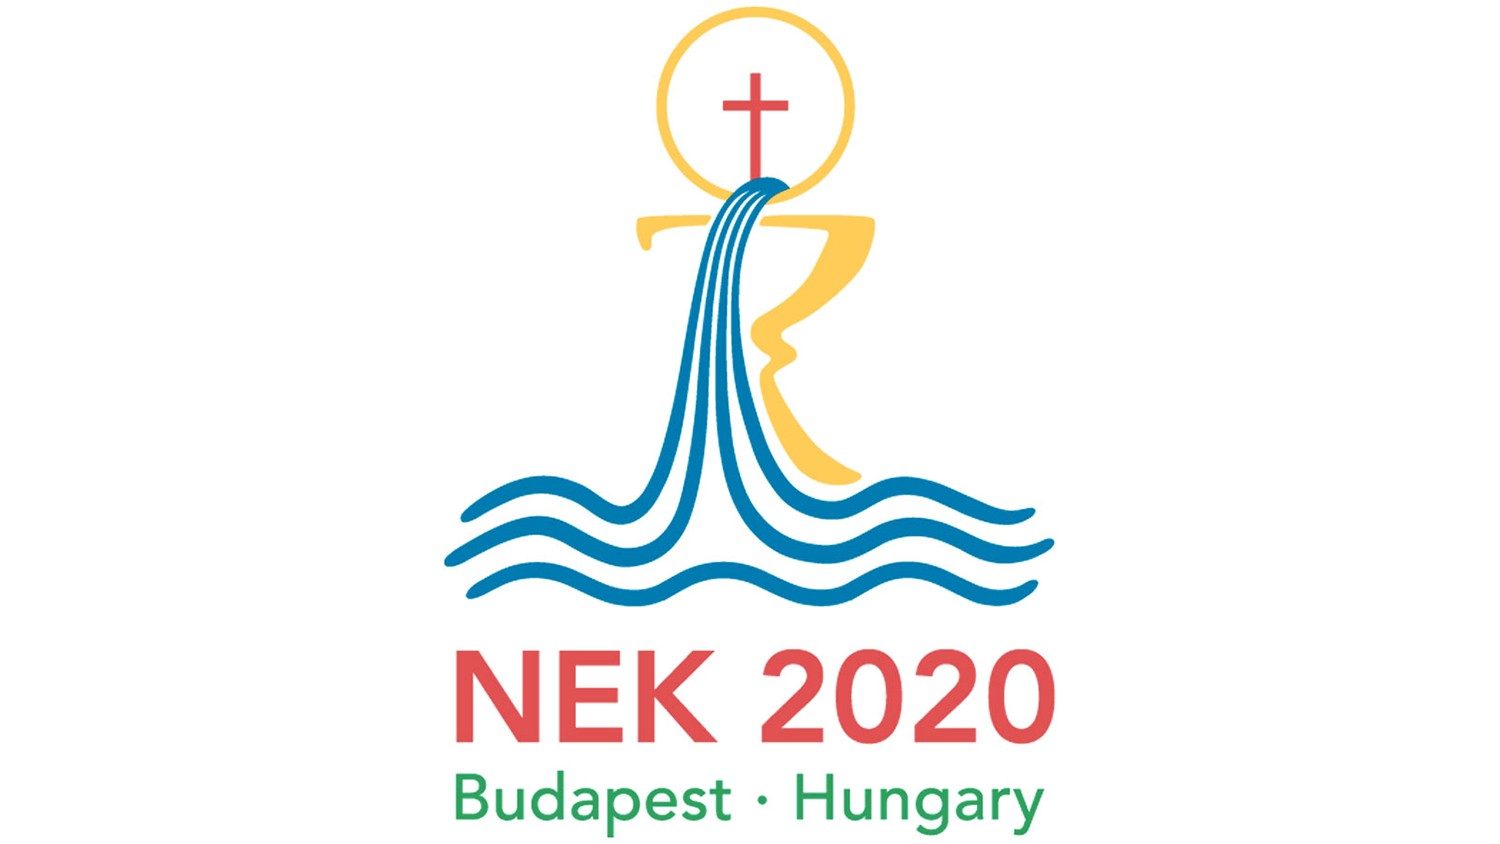 Il logo del 52.simo Congresso eucaristico internazionale, spostato dal 2020 al 2021 a causa della pandemia.